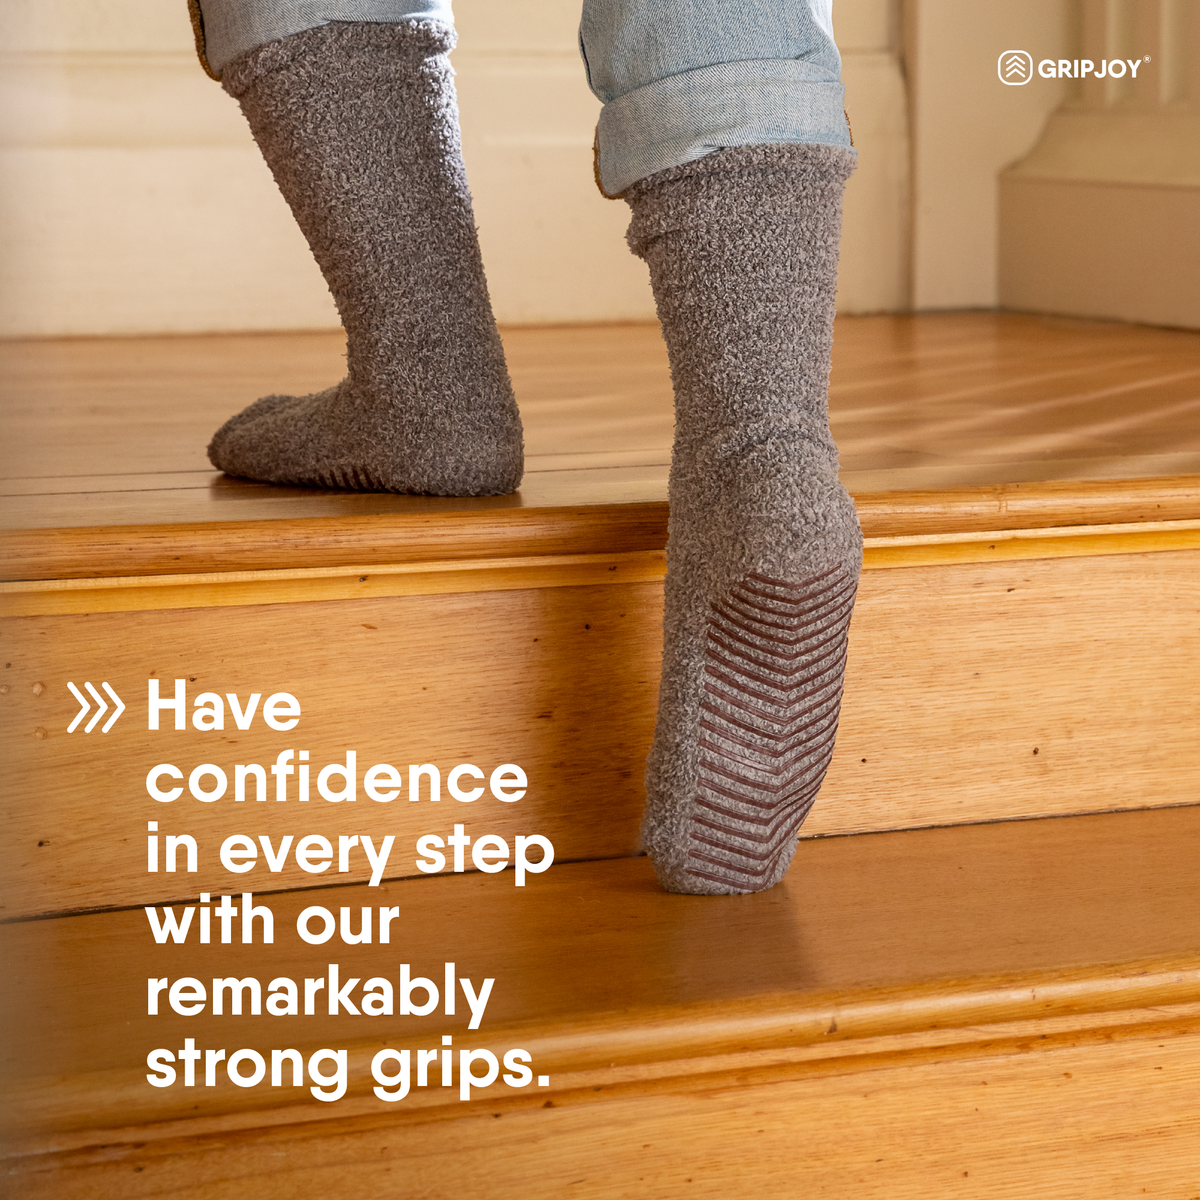 Dark Grey Fuzzy Socks with Grips for Women x2 Pairs